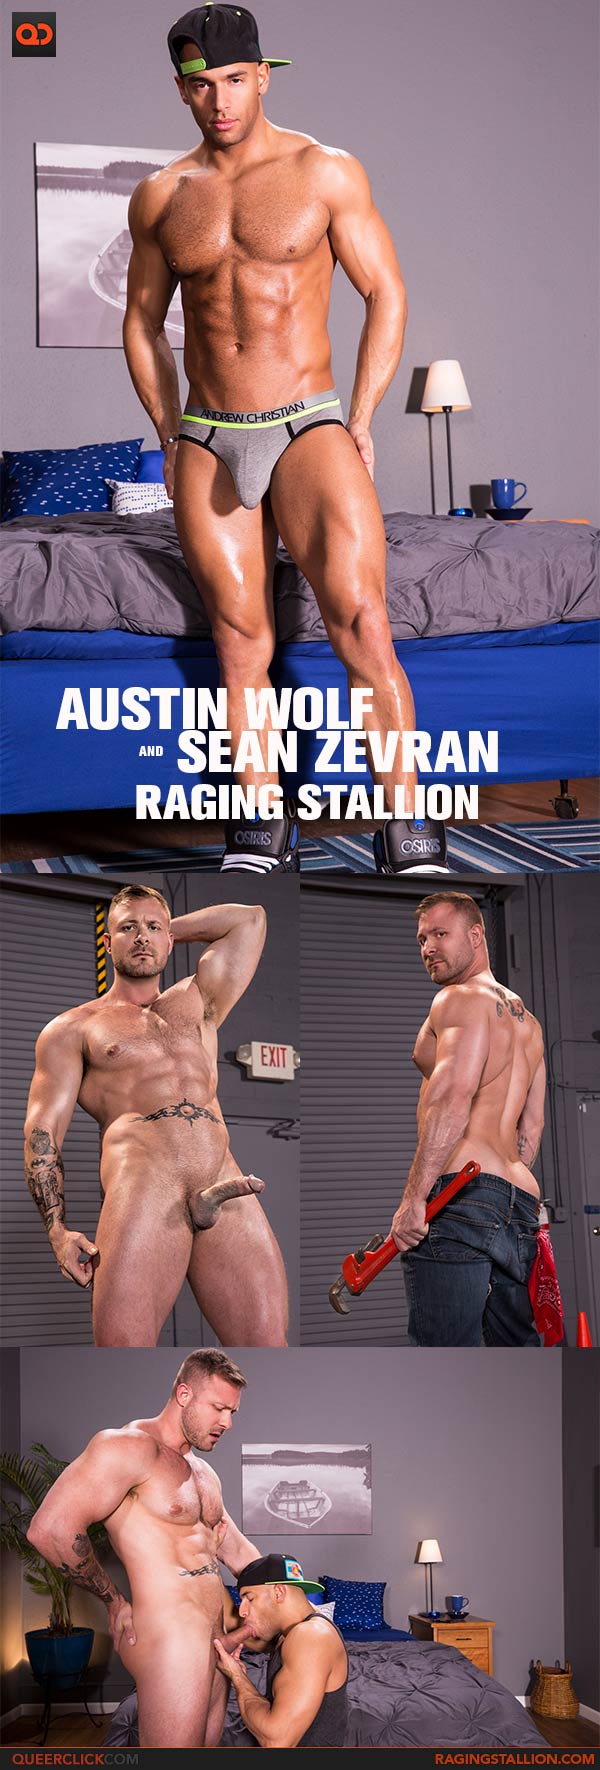 RagingStallion: Austin Wolf and Sean Zevran